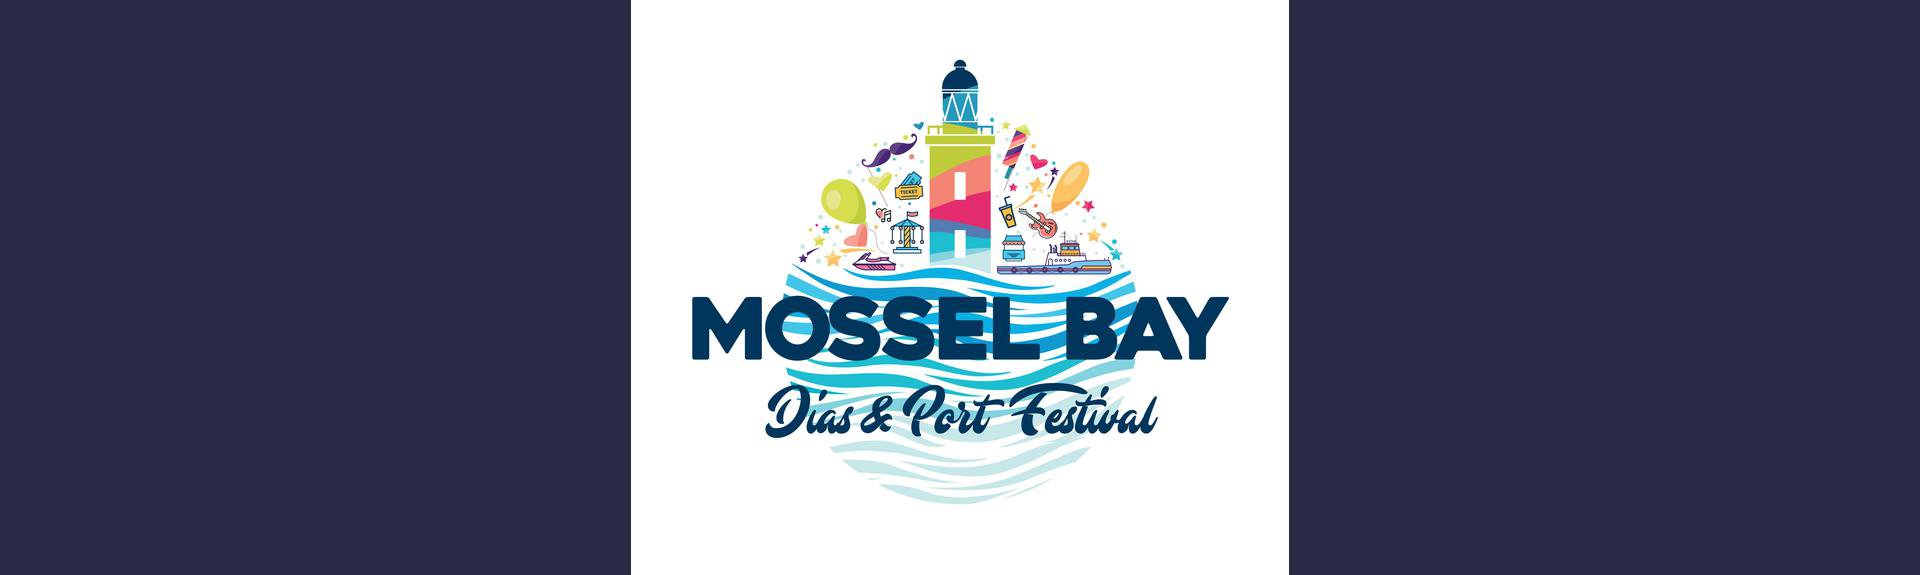 Mossel Bay Dias & Port Festival